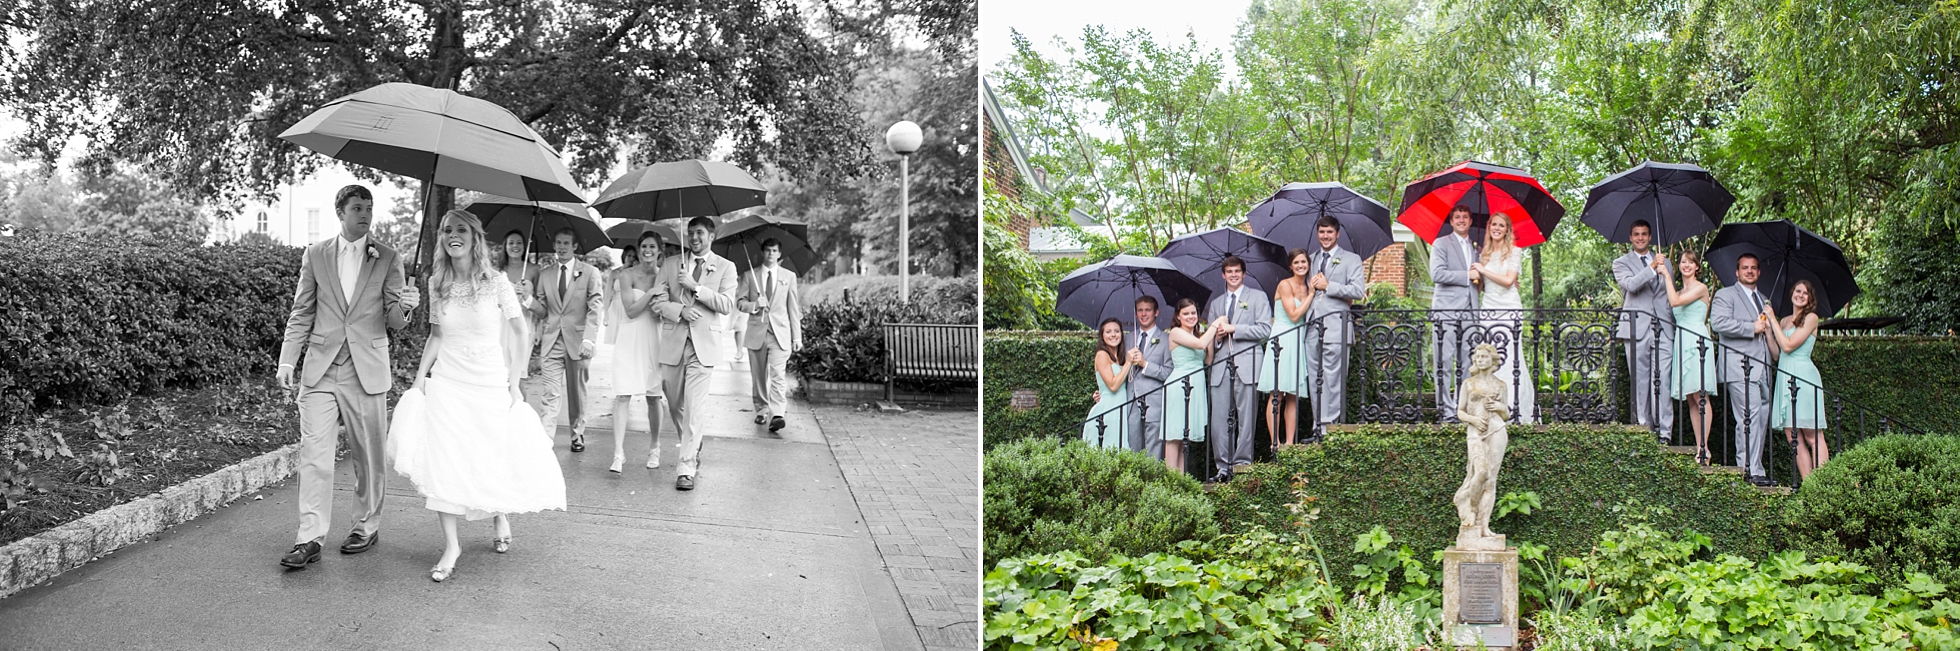 umbrellas founders garden uga